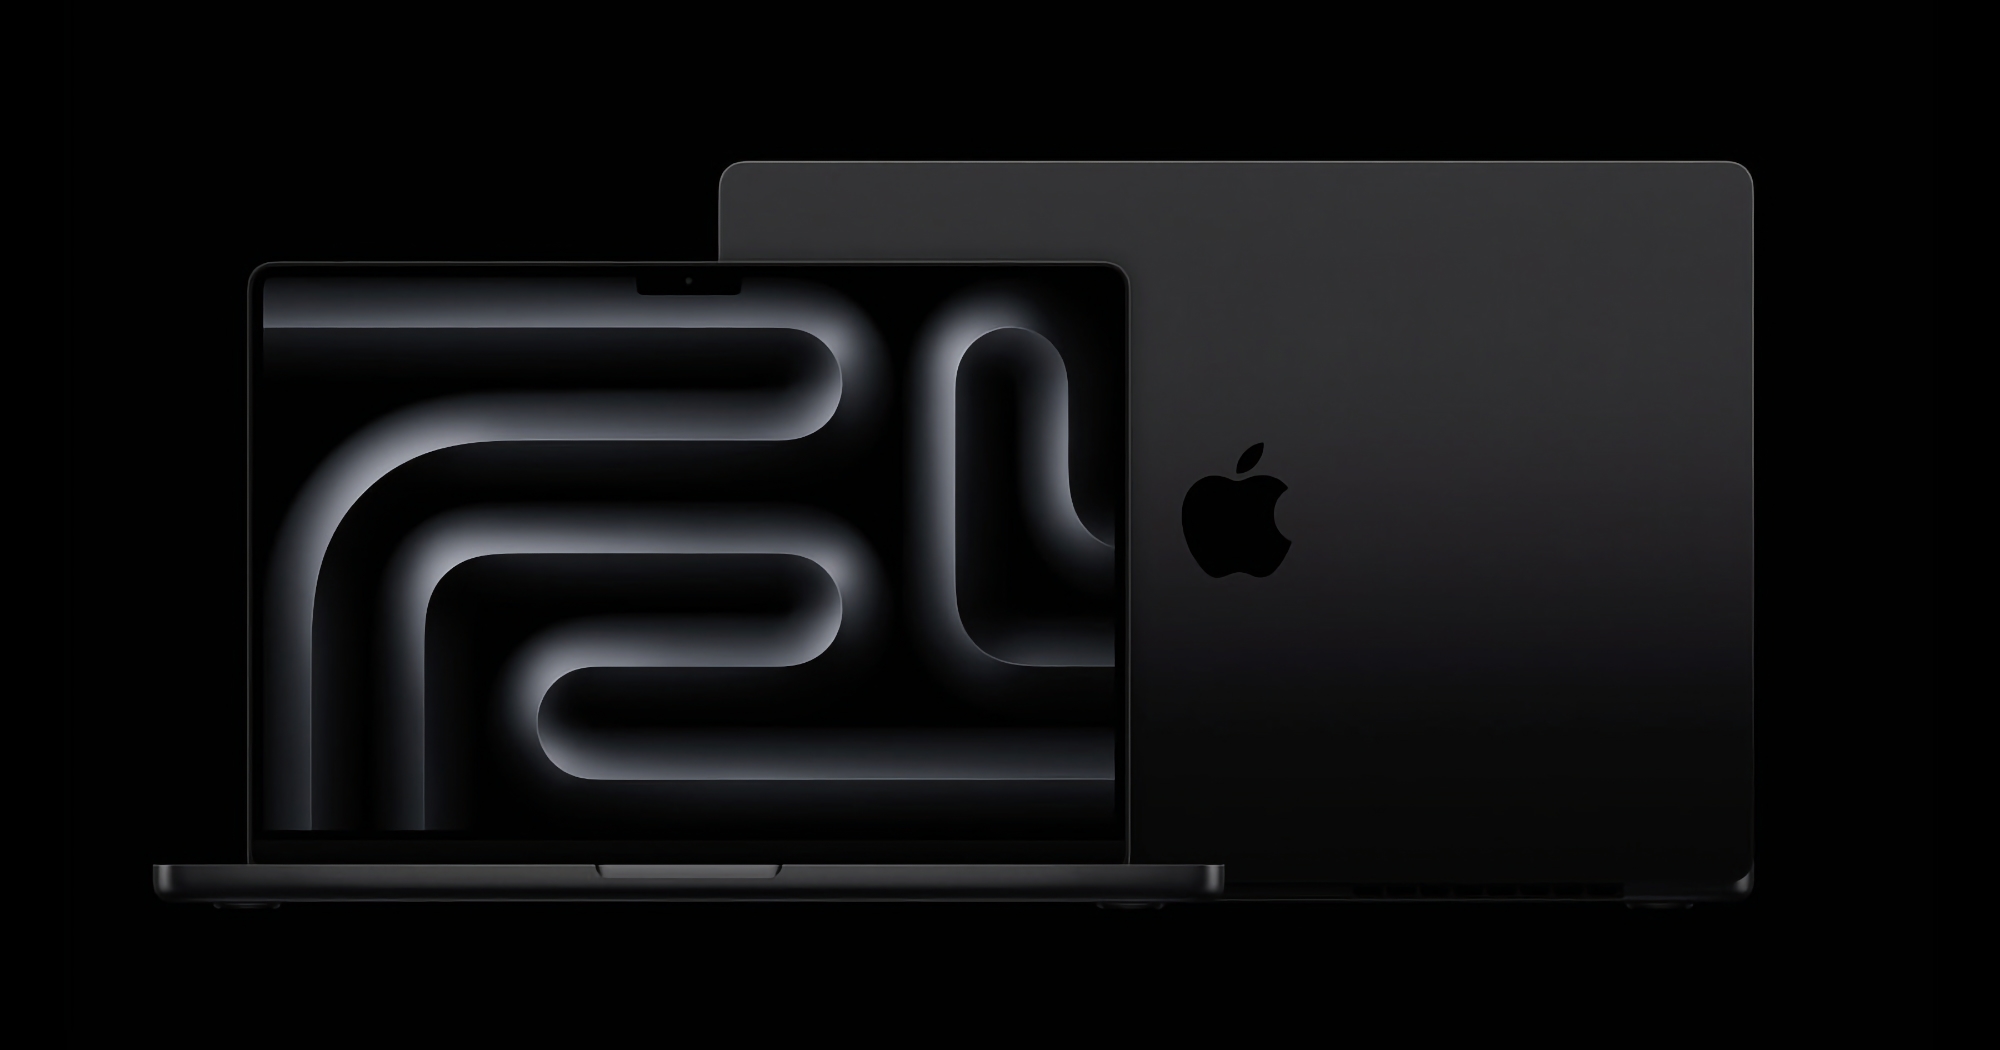 De 14-inch MacBook Pro M3 met 16 GB RAM is nu verkrijgbaar in de Apple winkels